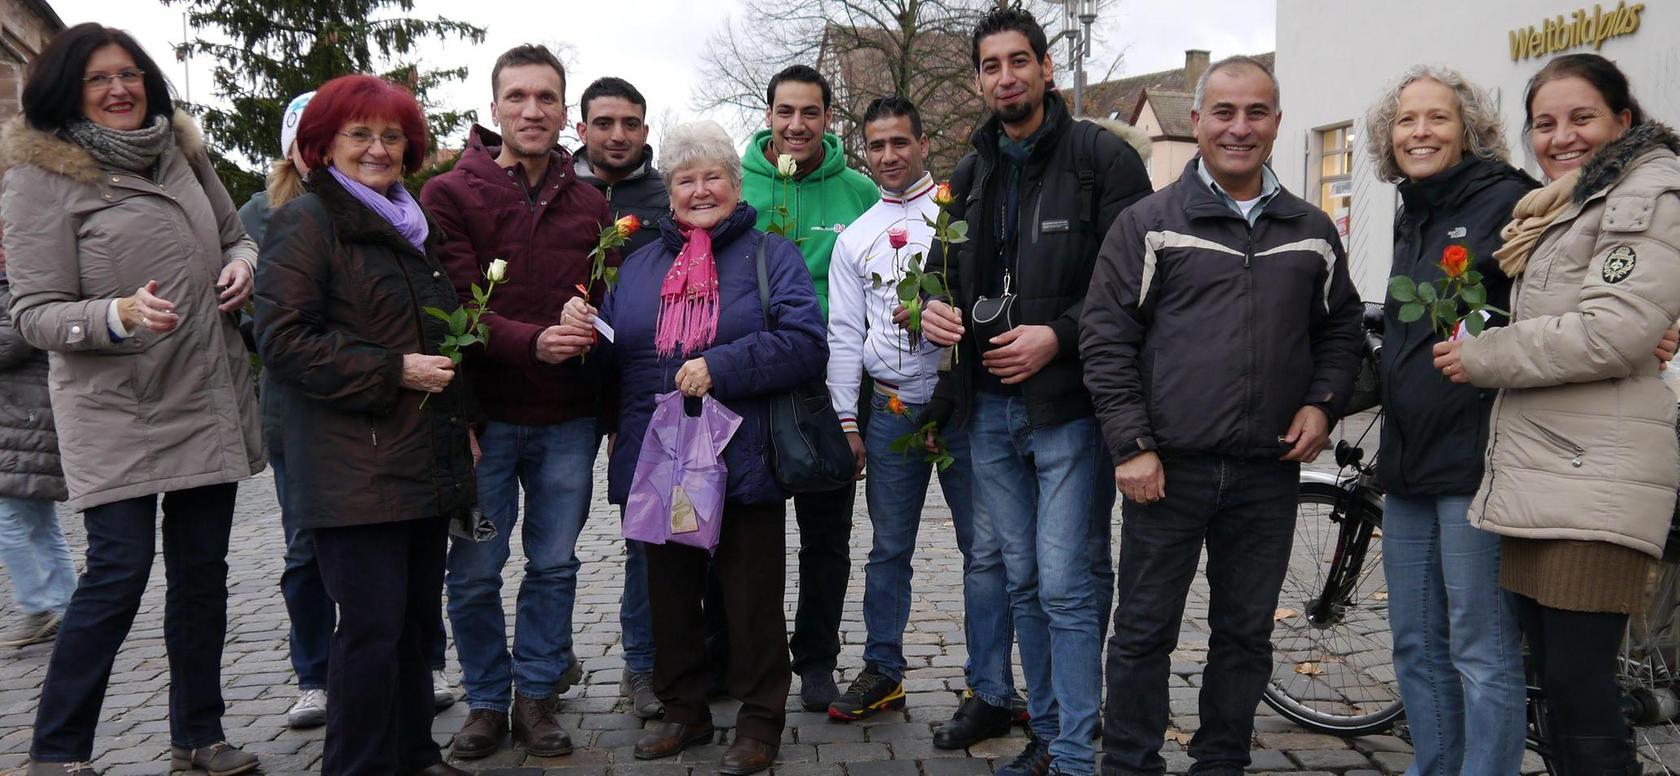 Asylbewerber bedankten sich mit Blumengruß